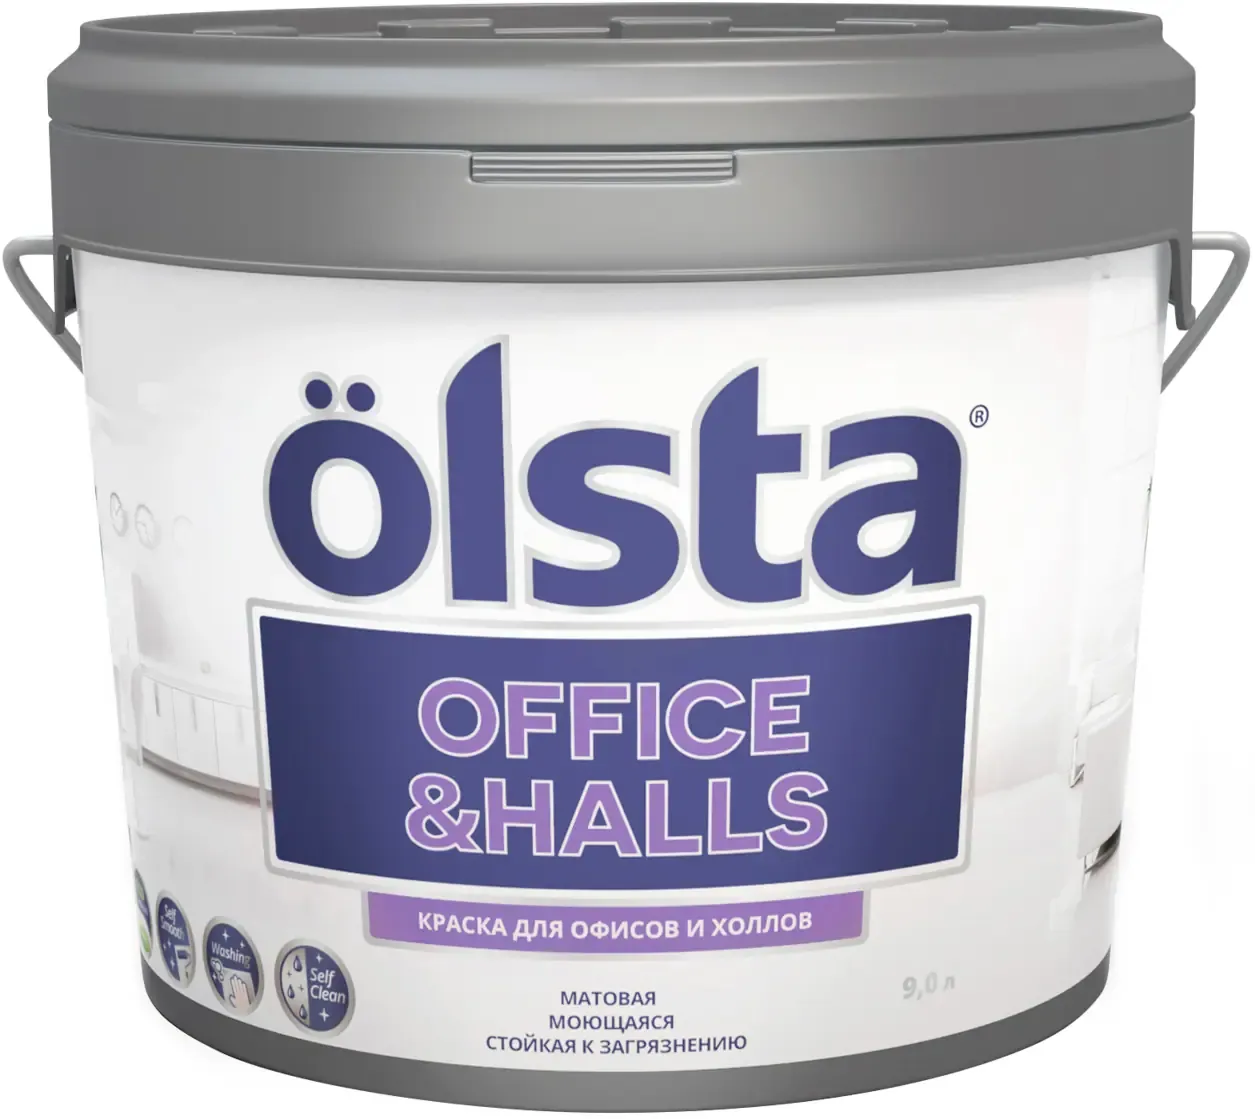 Краска для офисов и холлов Olsta Office & Halls 9 л природная оливковая база C №88C Olives шелковисто матовая 00